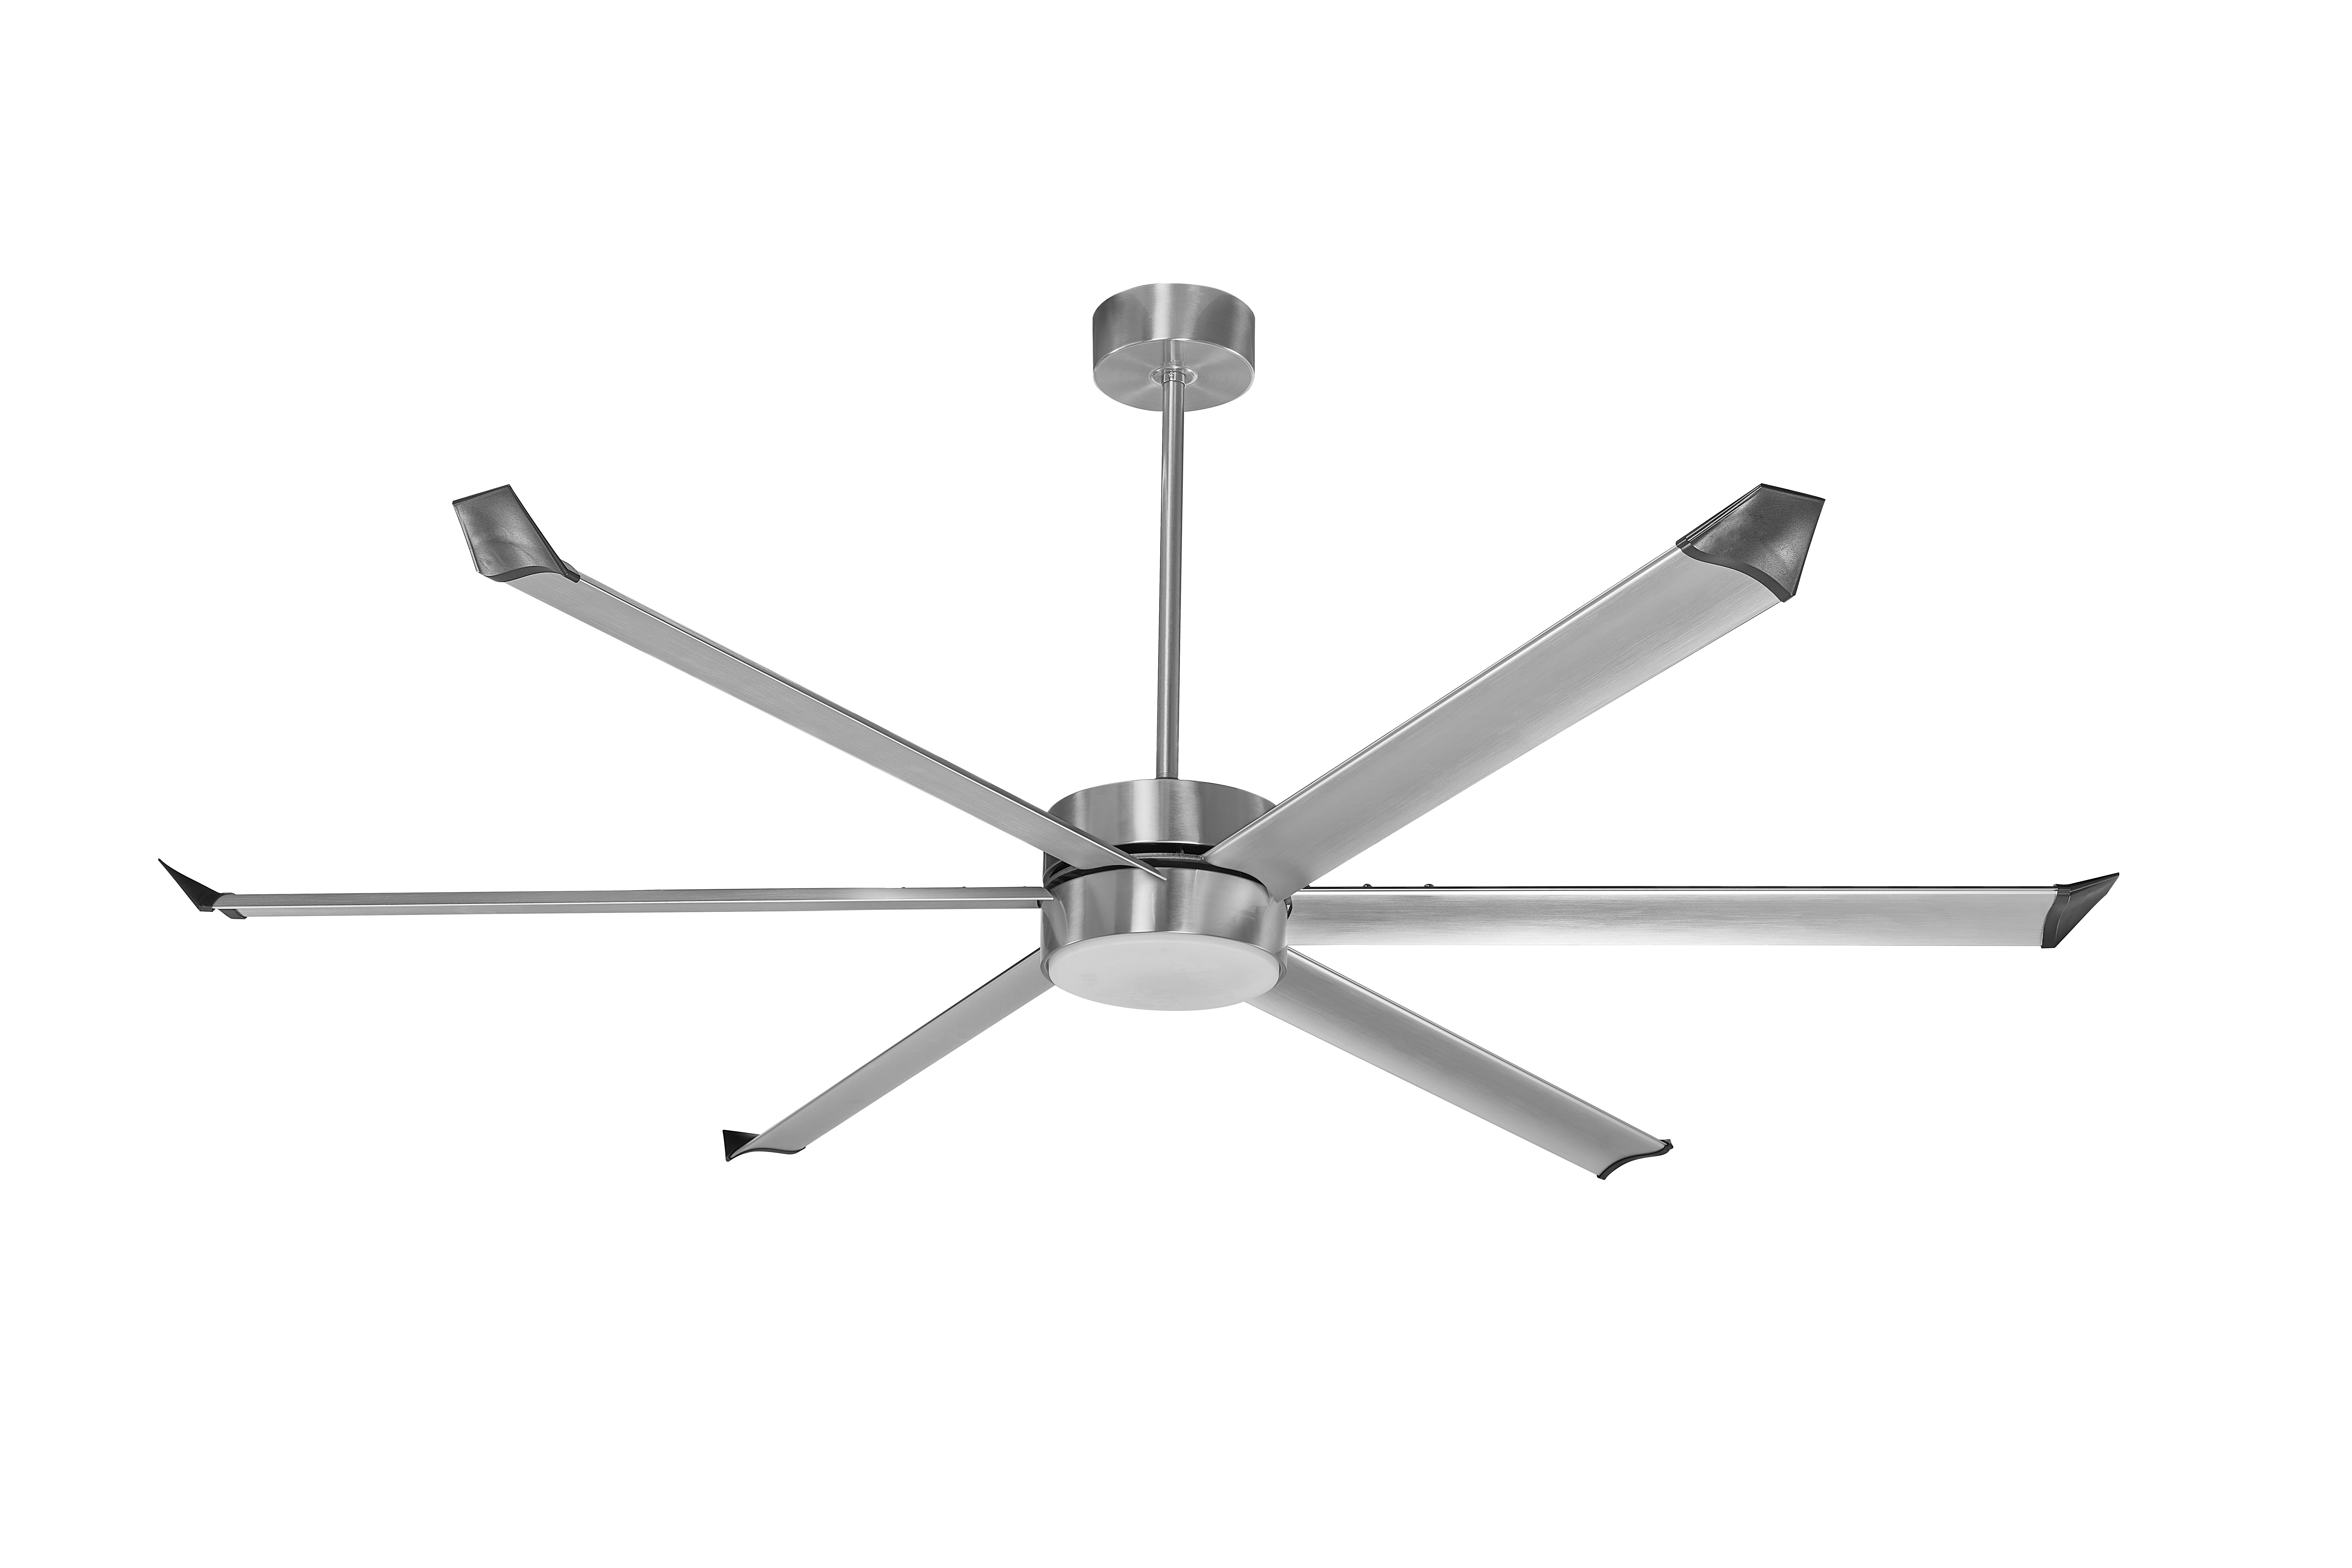 Maxslak ;bldc Industrial Ceiling Fan;white;diameter 80-100 Inch